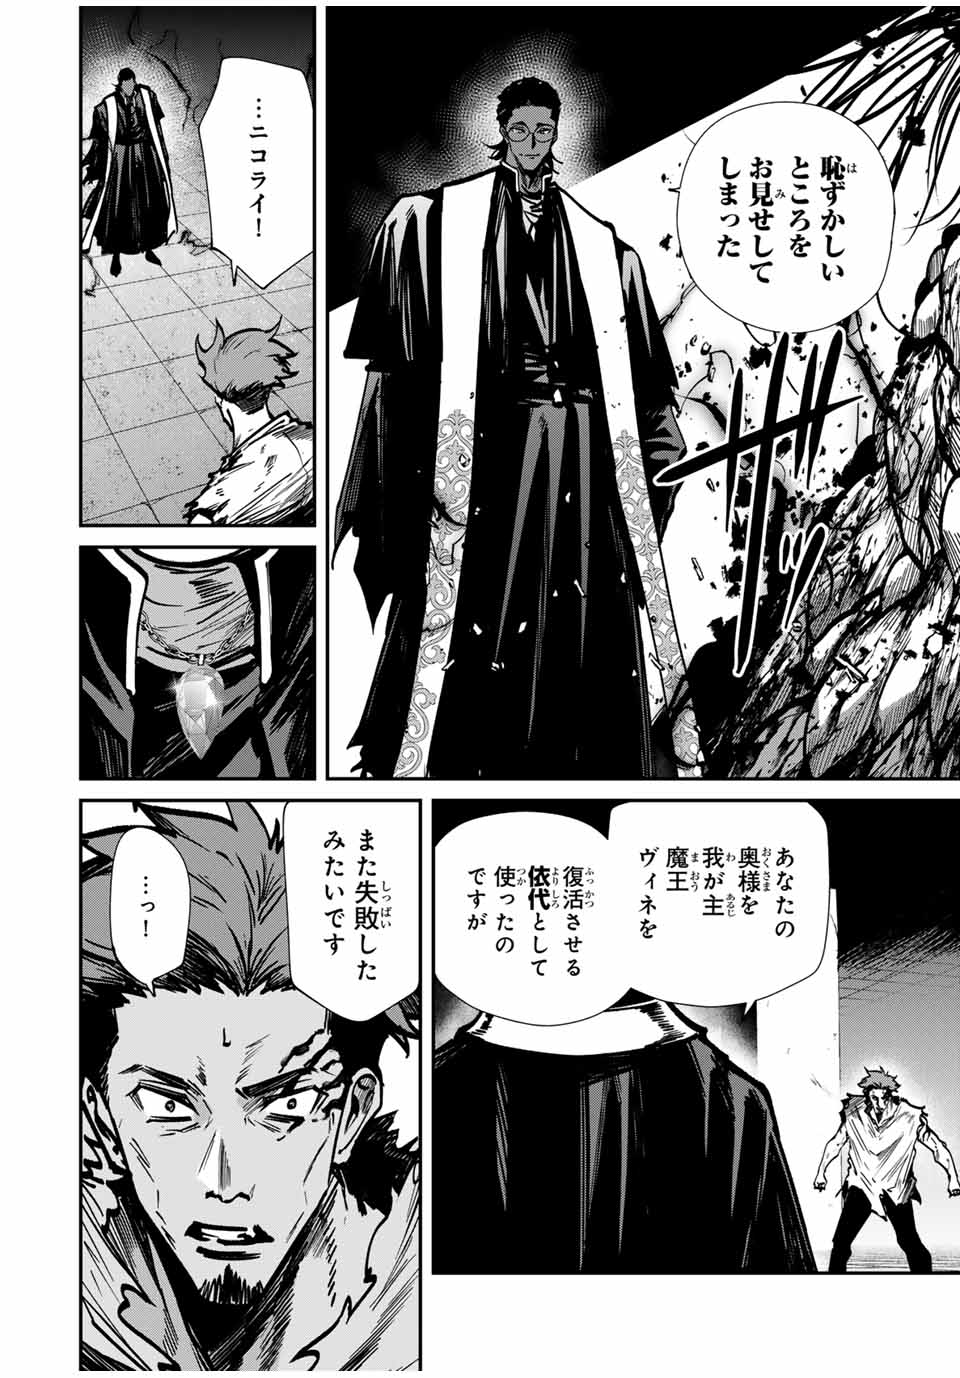 Kono Sekai ga Izure Horobu Koto wo, Ore dake ga Shitte Iru - Chapter 80 - Page 2